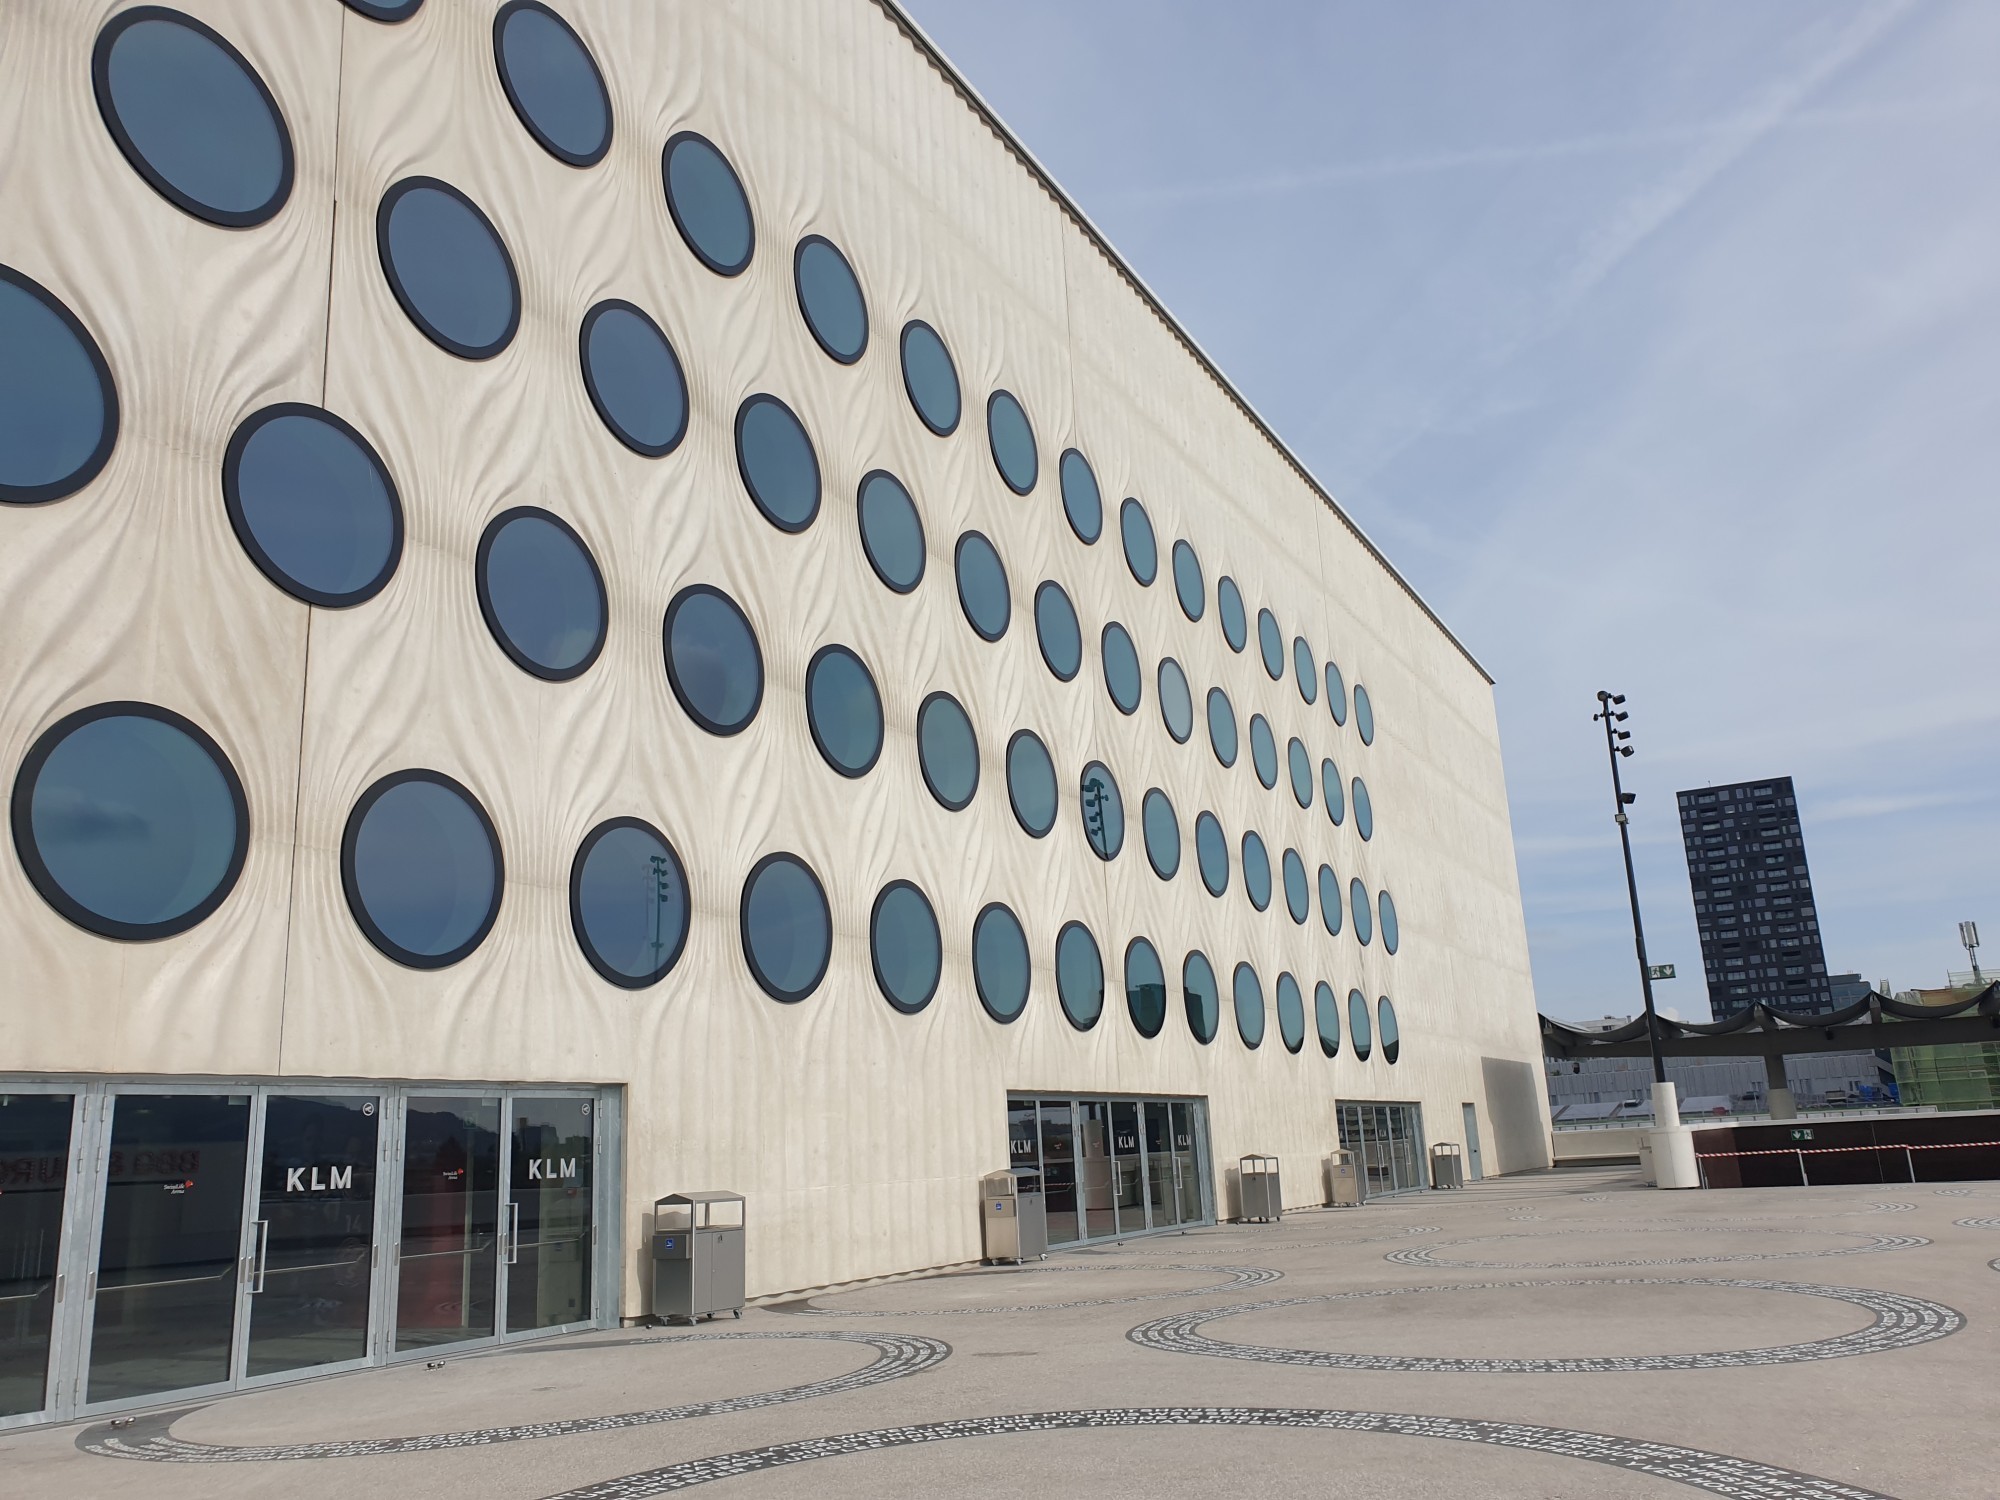 La façade de la Swiss Life Arena de Zurich se déploie comme un rideau drapé autour du bâtiment. Les fenêtres arrondies se veulent un clin d'oeil aux pucks des hockeyeurs.